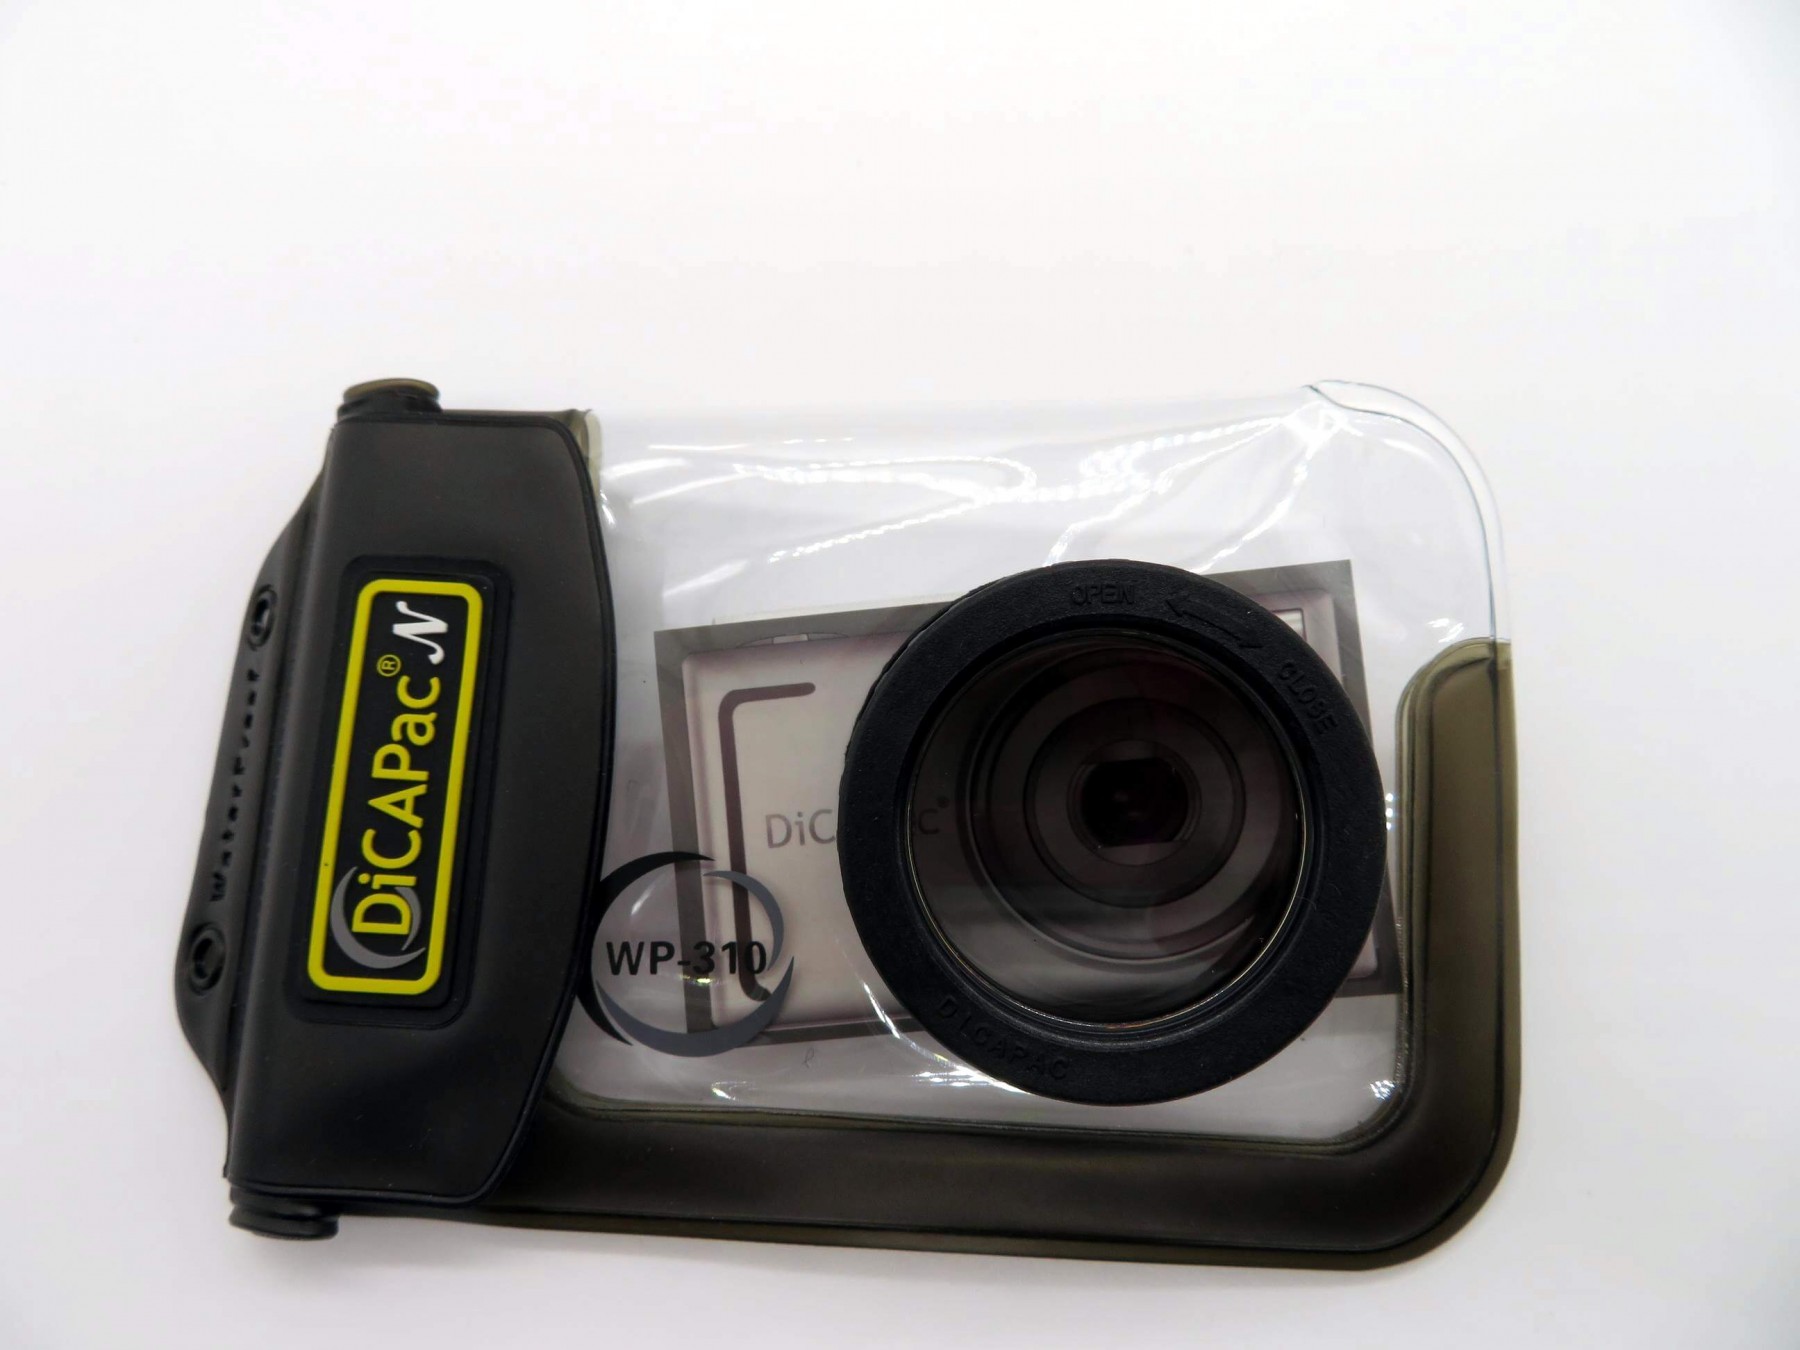 DiCAPac WP-310 Waterproof Camera Bag with camera